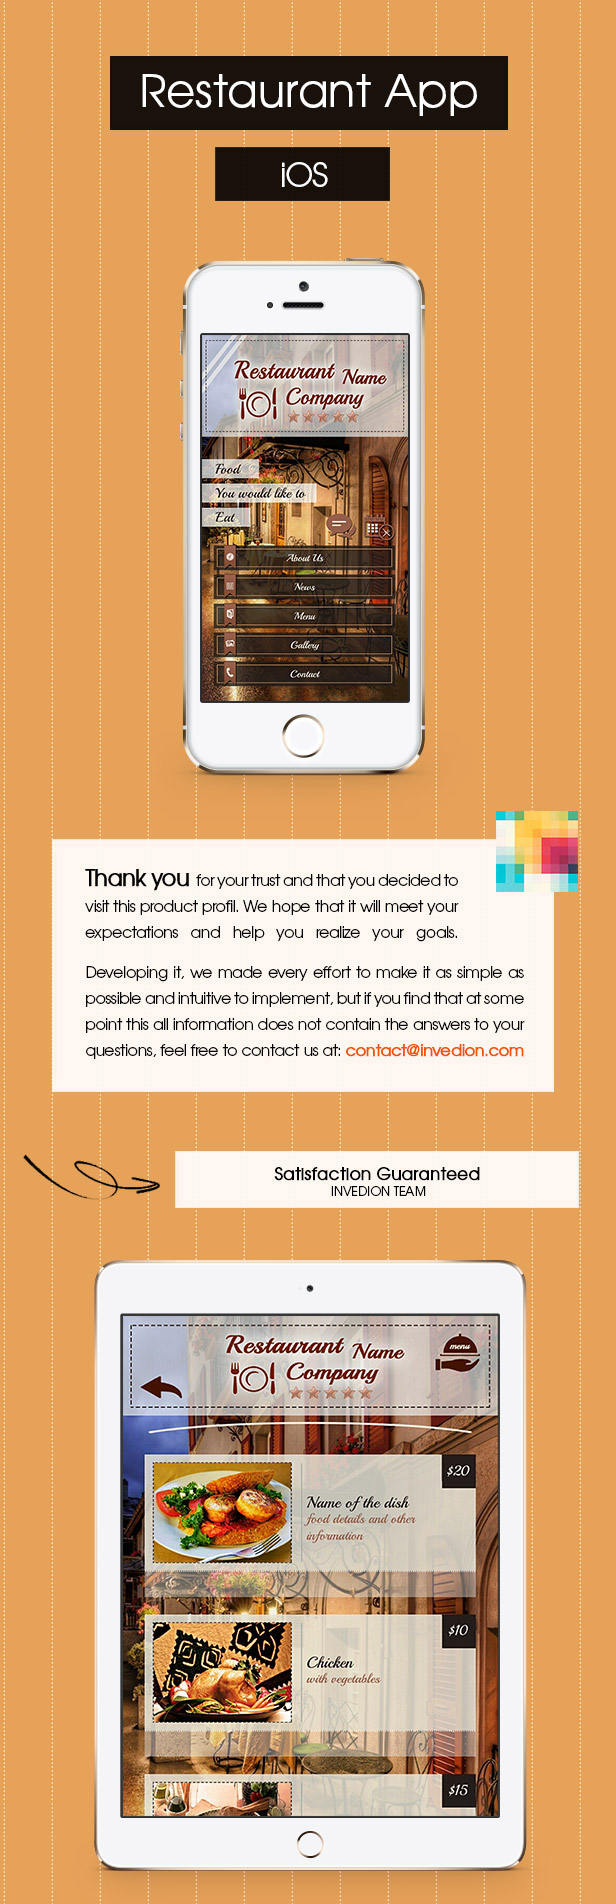 Restaurant App With CMS - iOS - 1